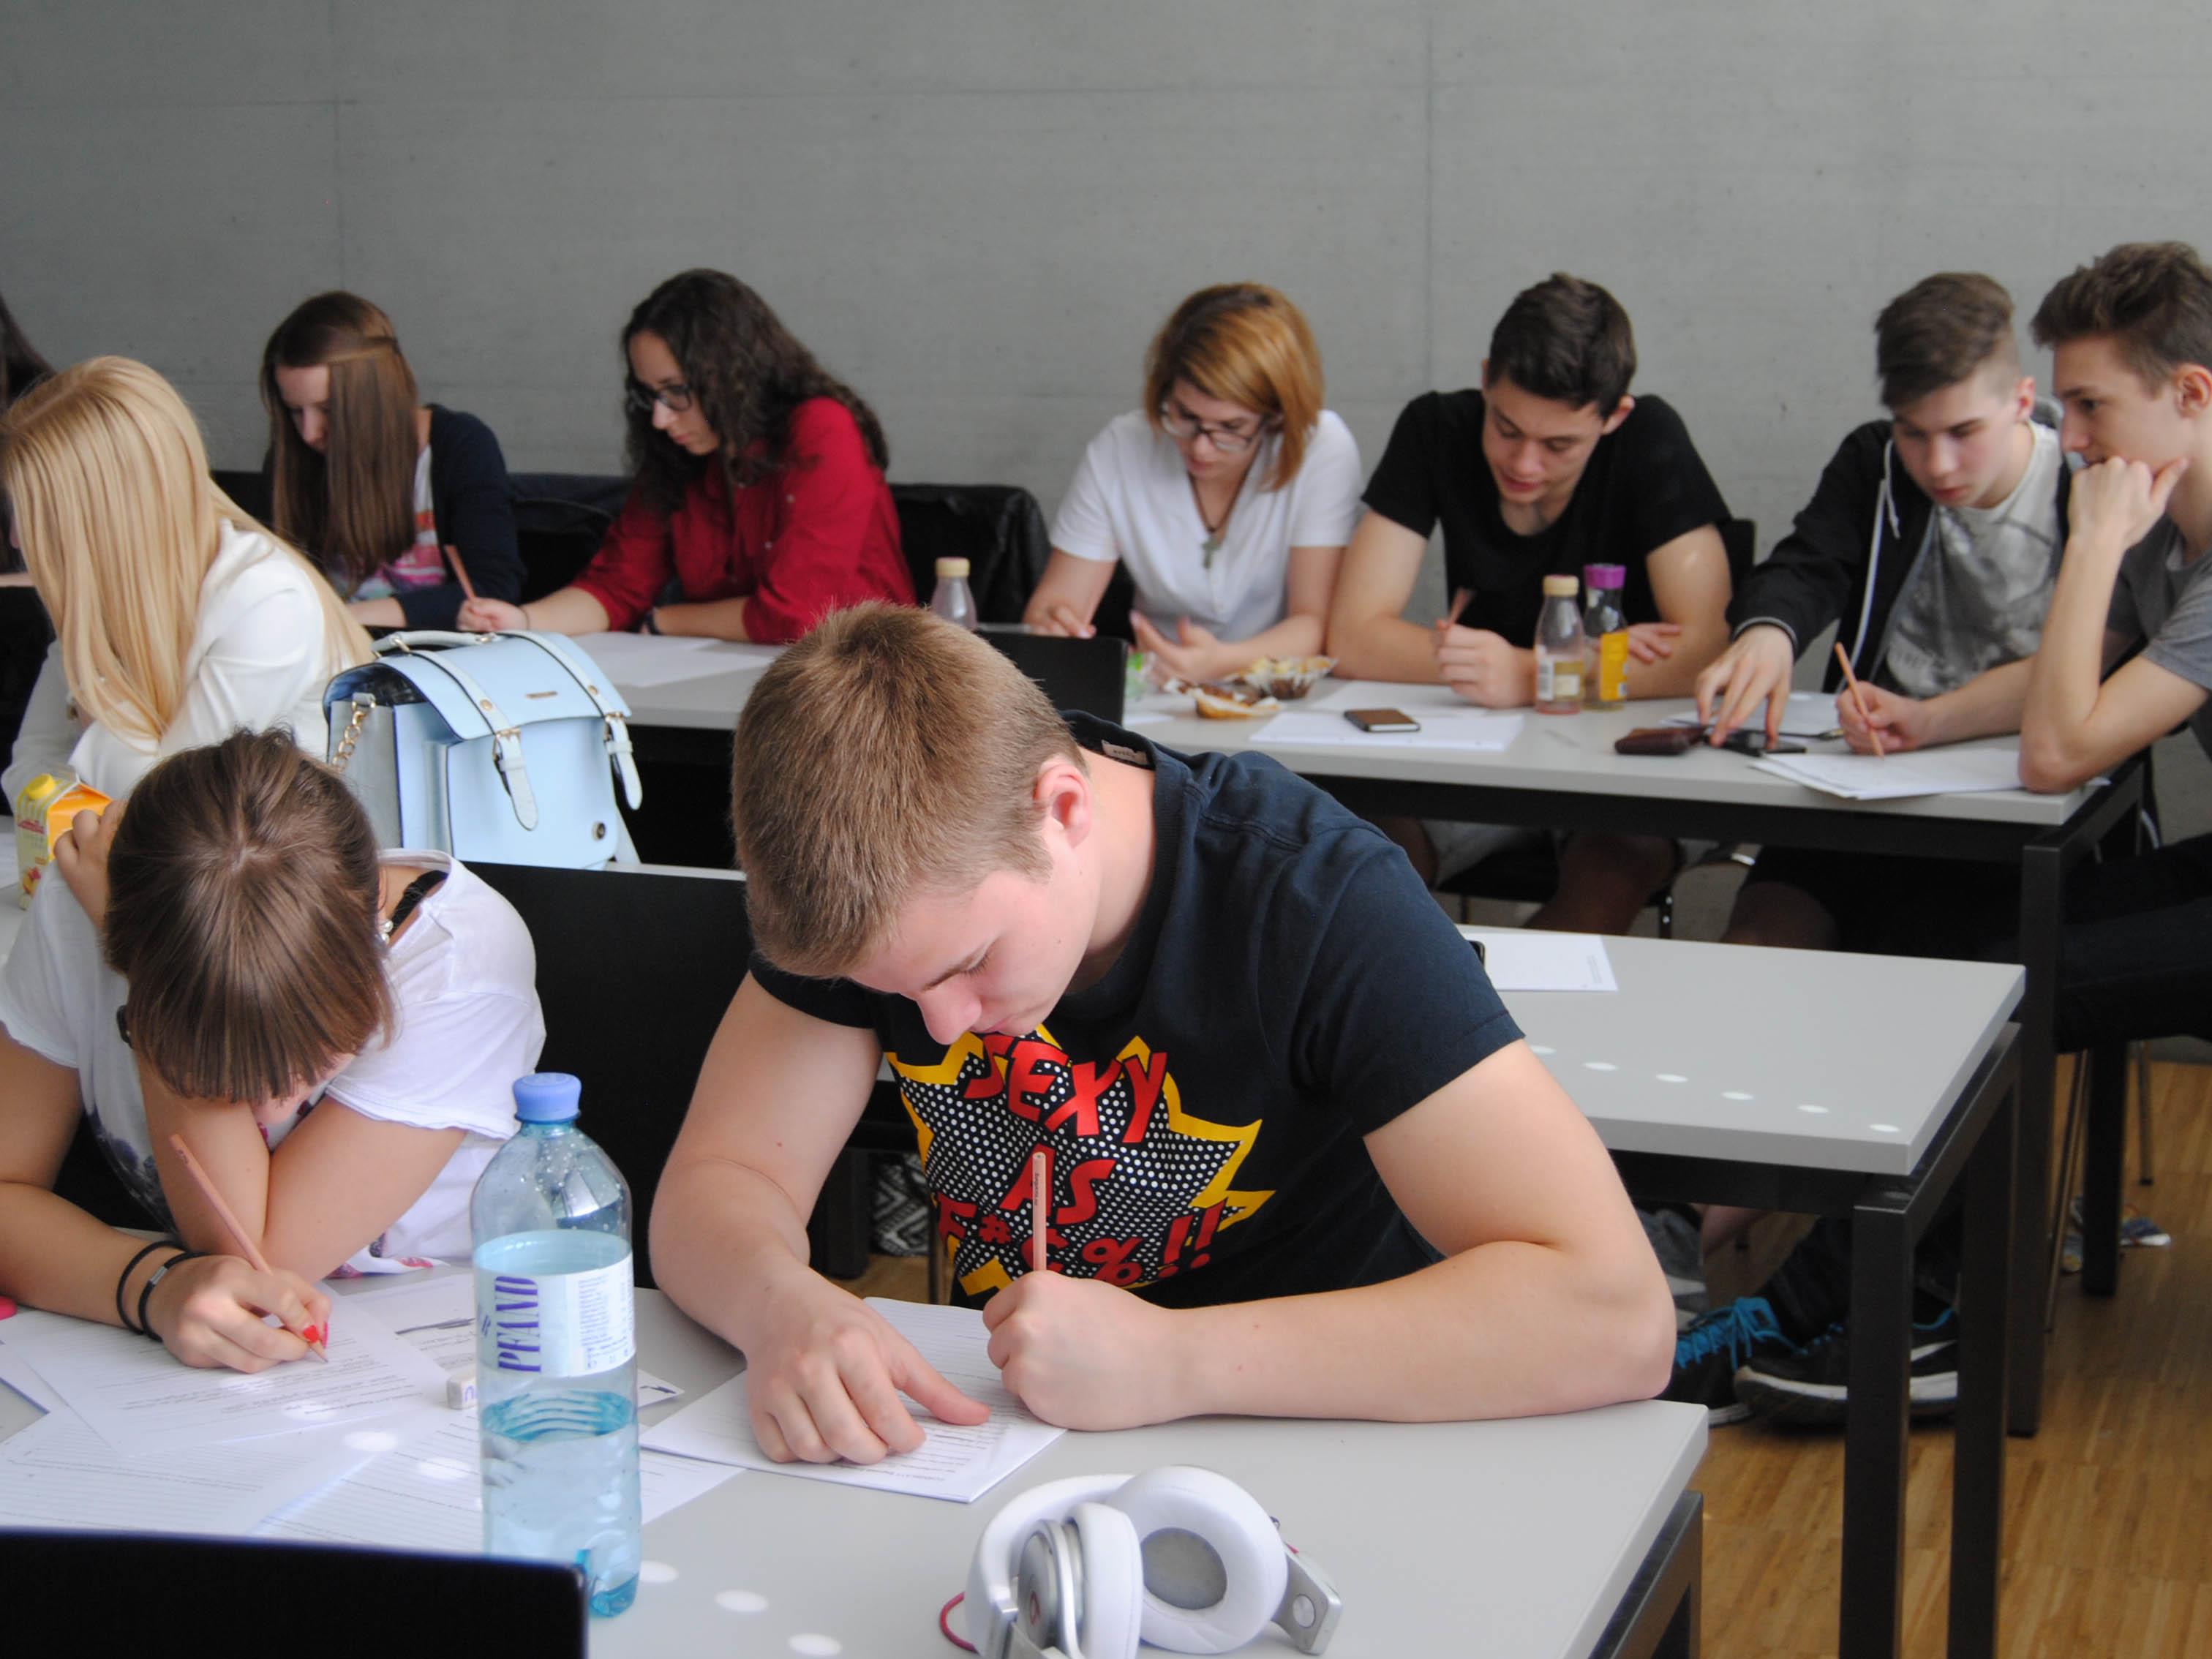 993 SchülerInnen aus 14 AHS aus ganz Vorarlberg haben an diesem Workshop teilgenommen.